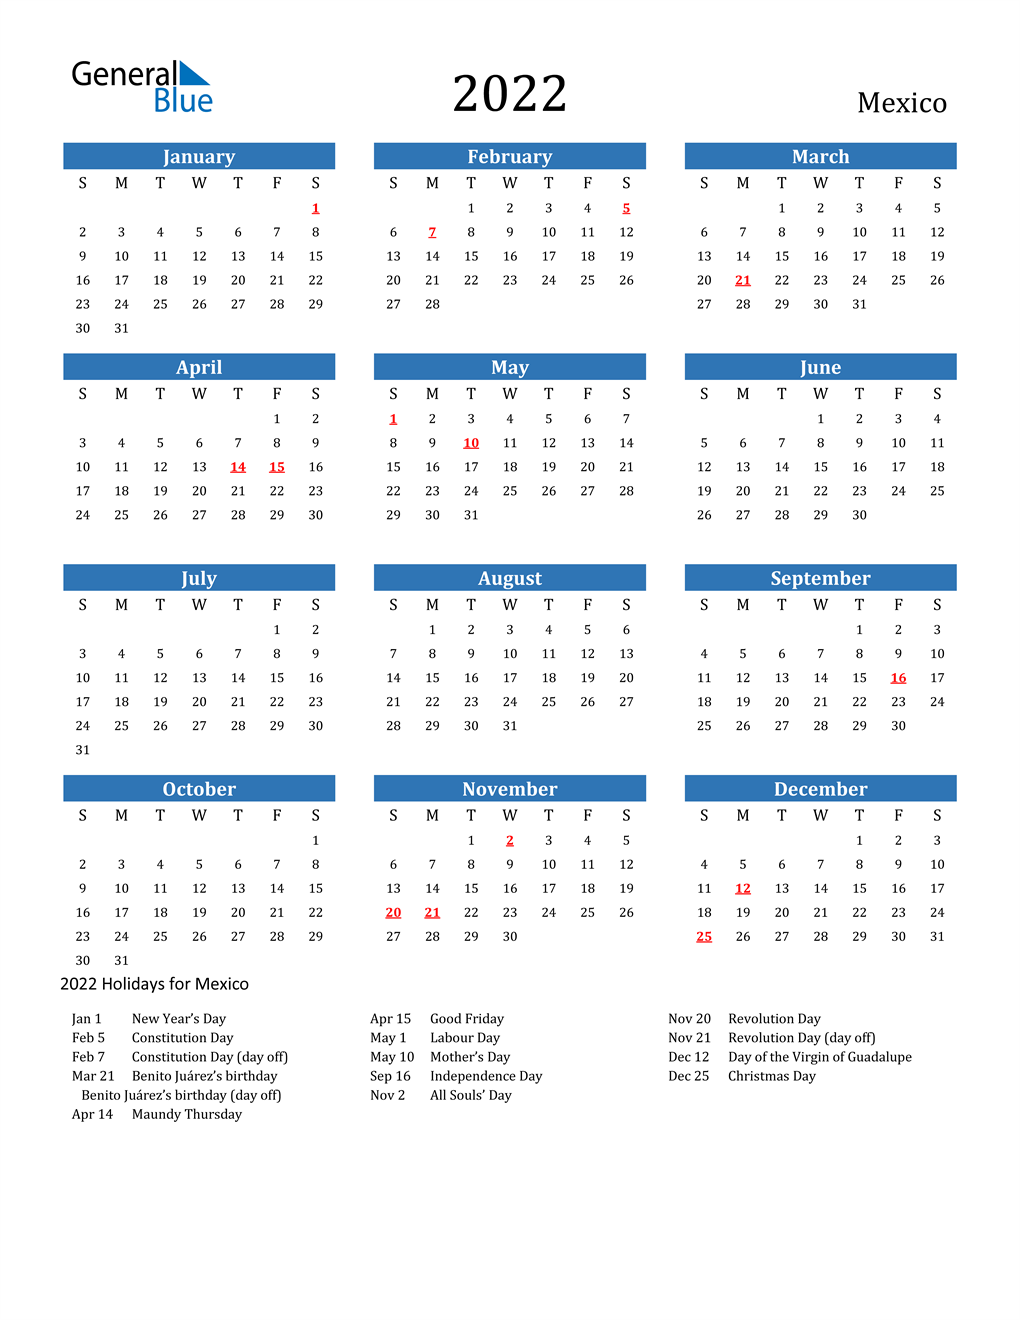 Mexican Calendar Names 2022 2022 Mexico Calendar With Holidays